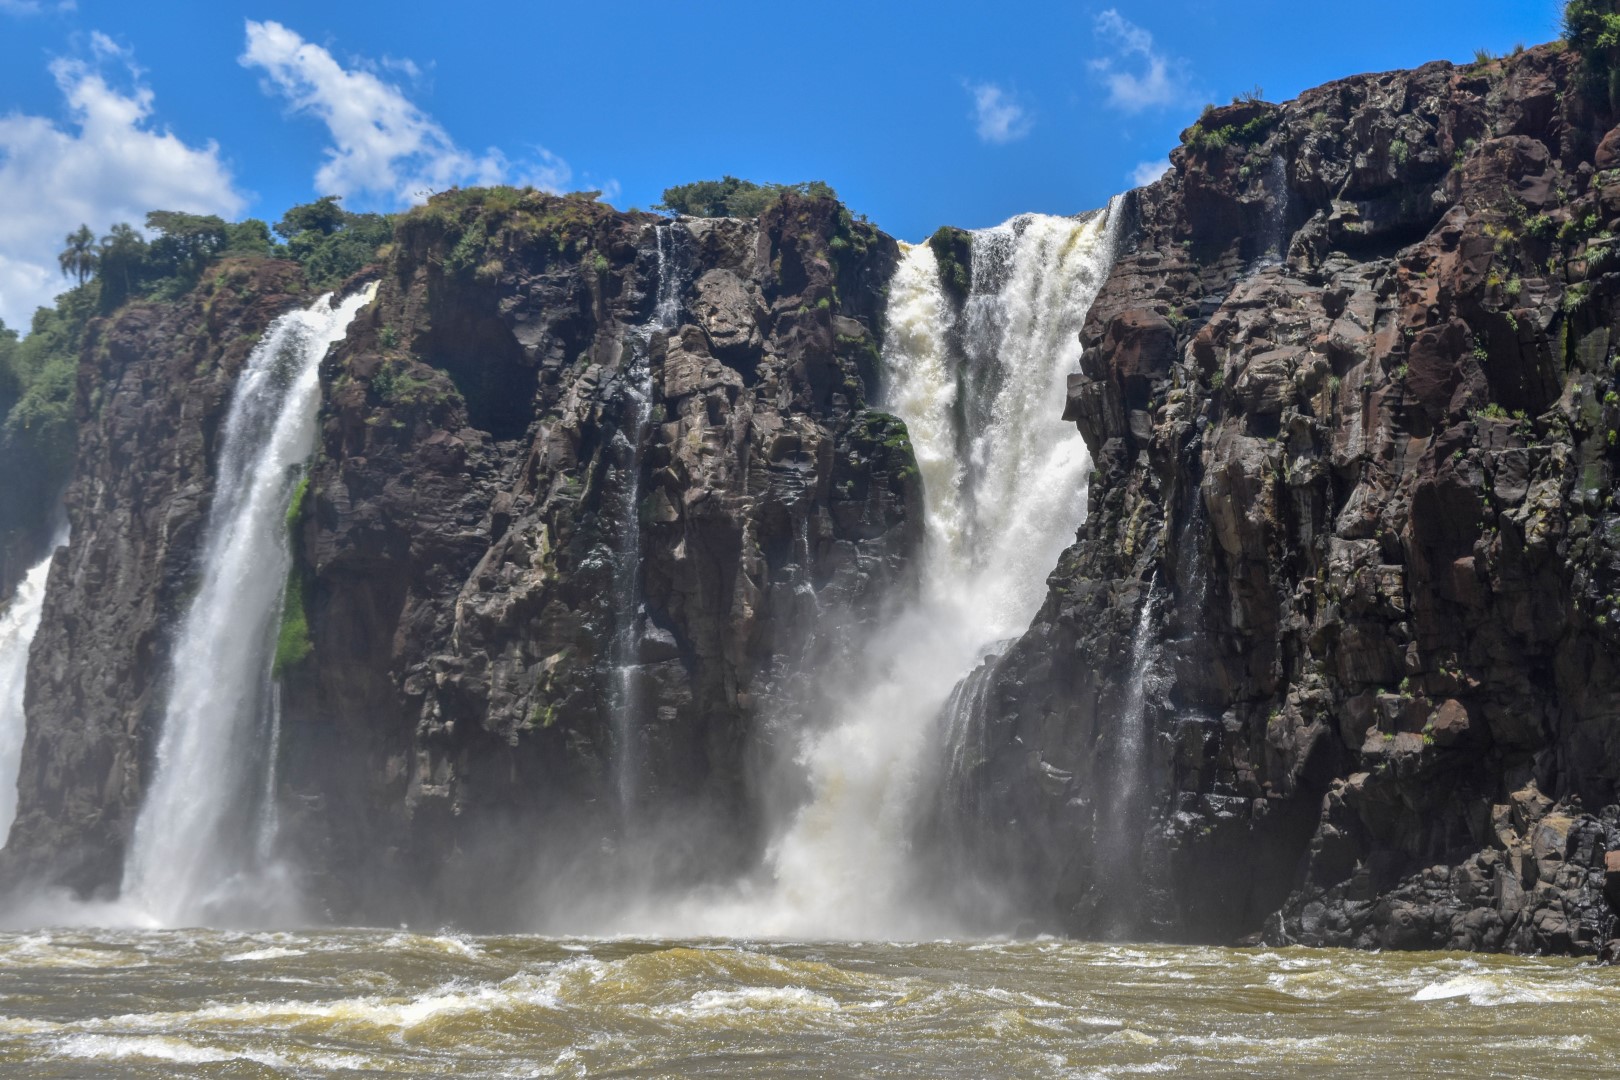 Parque Nacional Iguazú, Argentina, the boat adventure